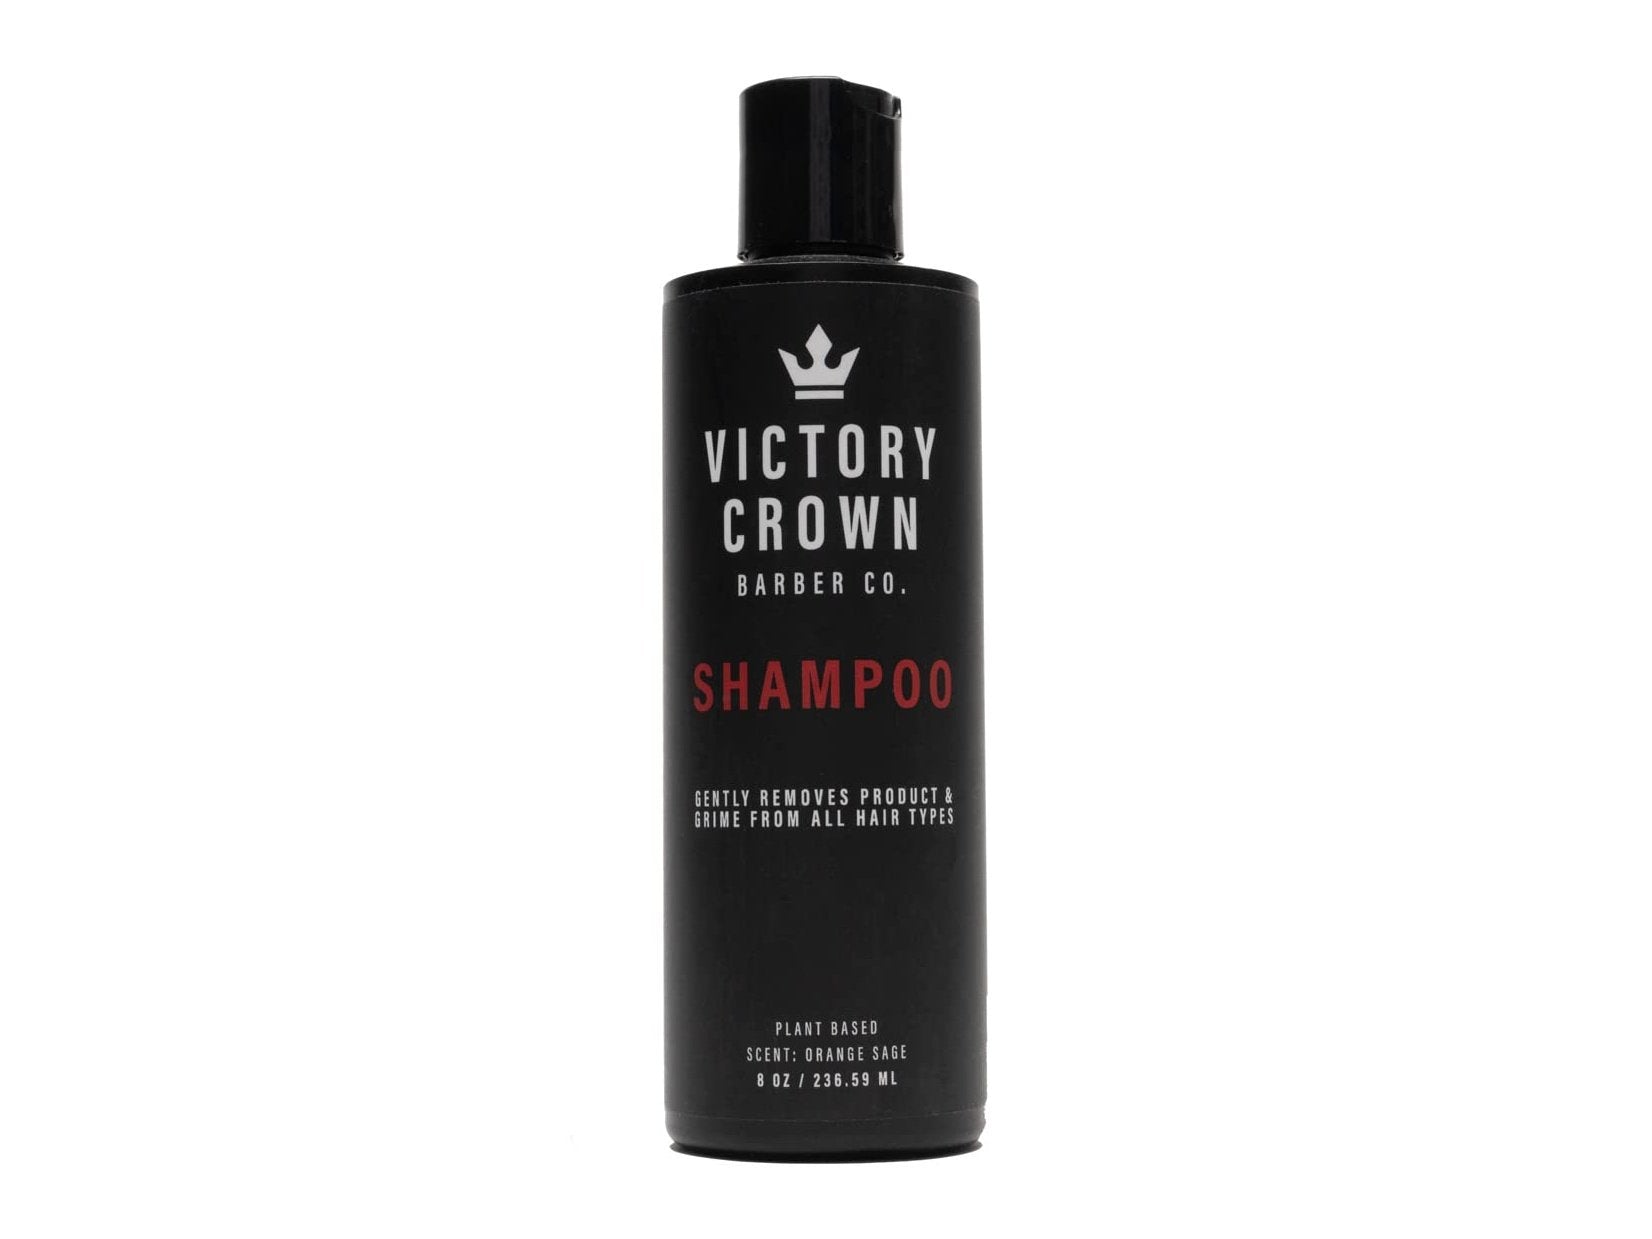 Victory Crown Shampoo, 8 oz.